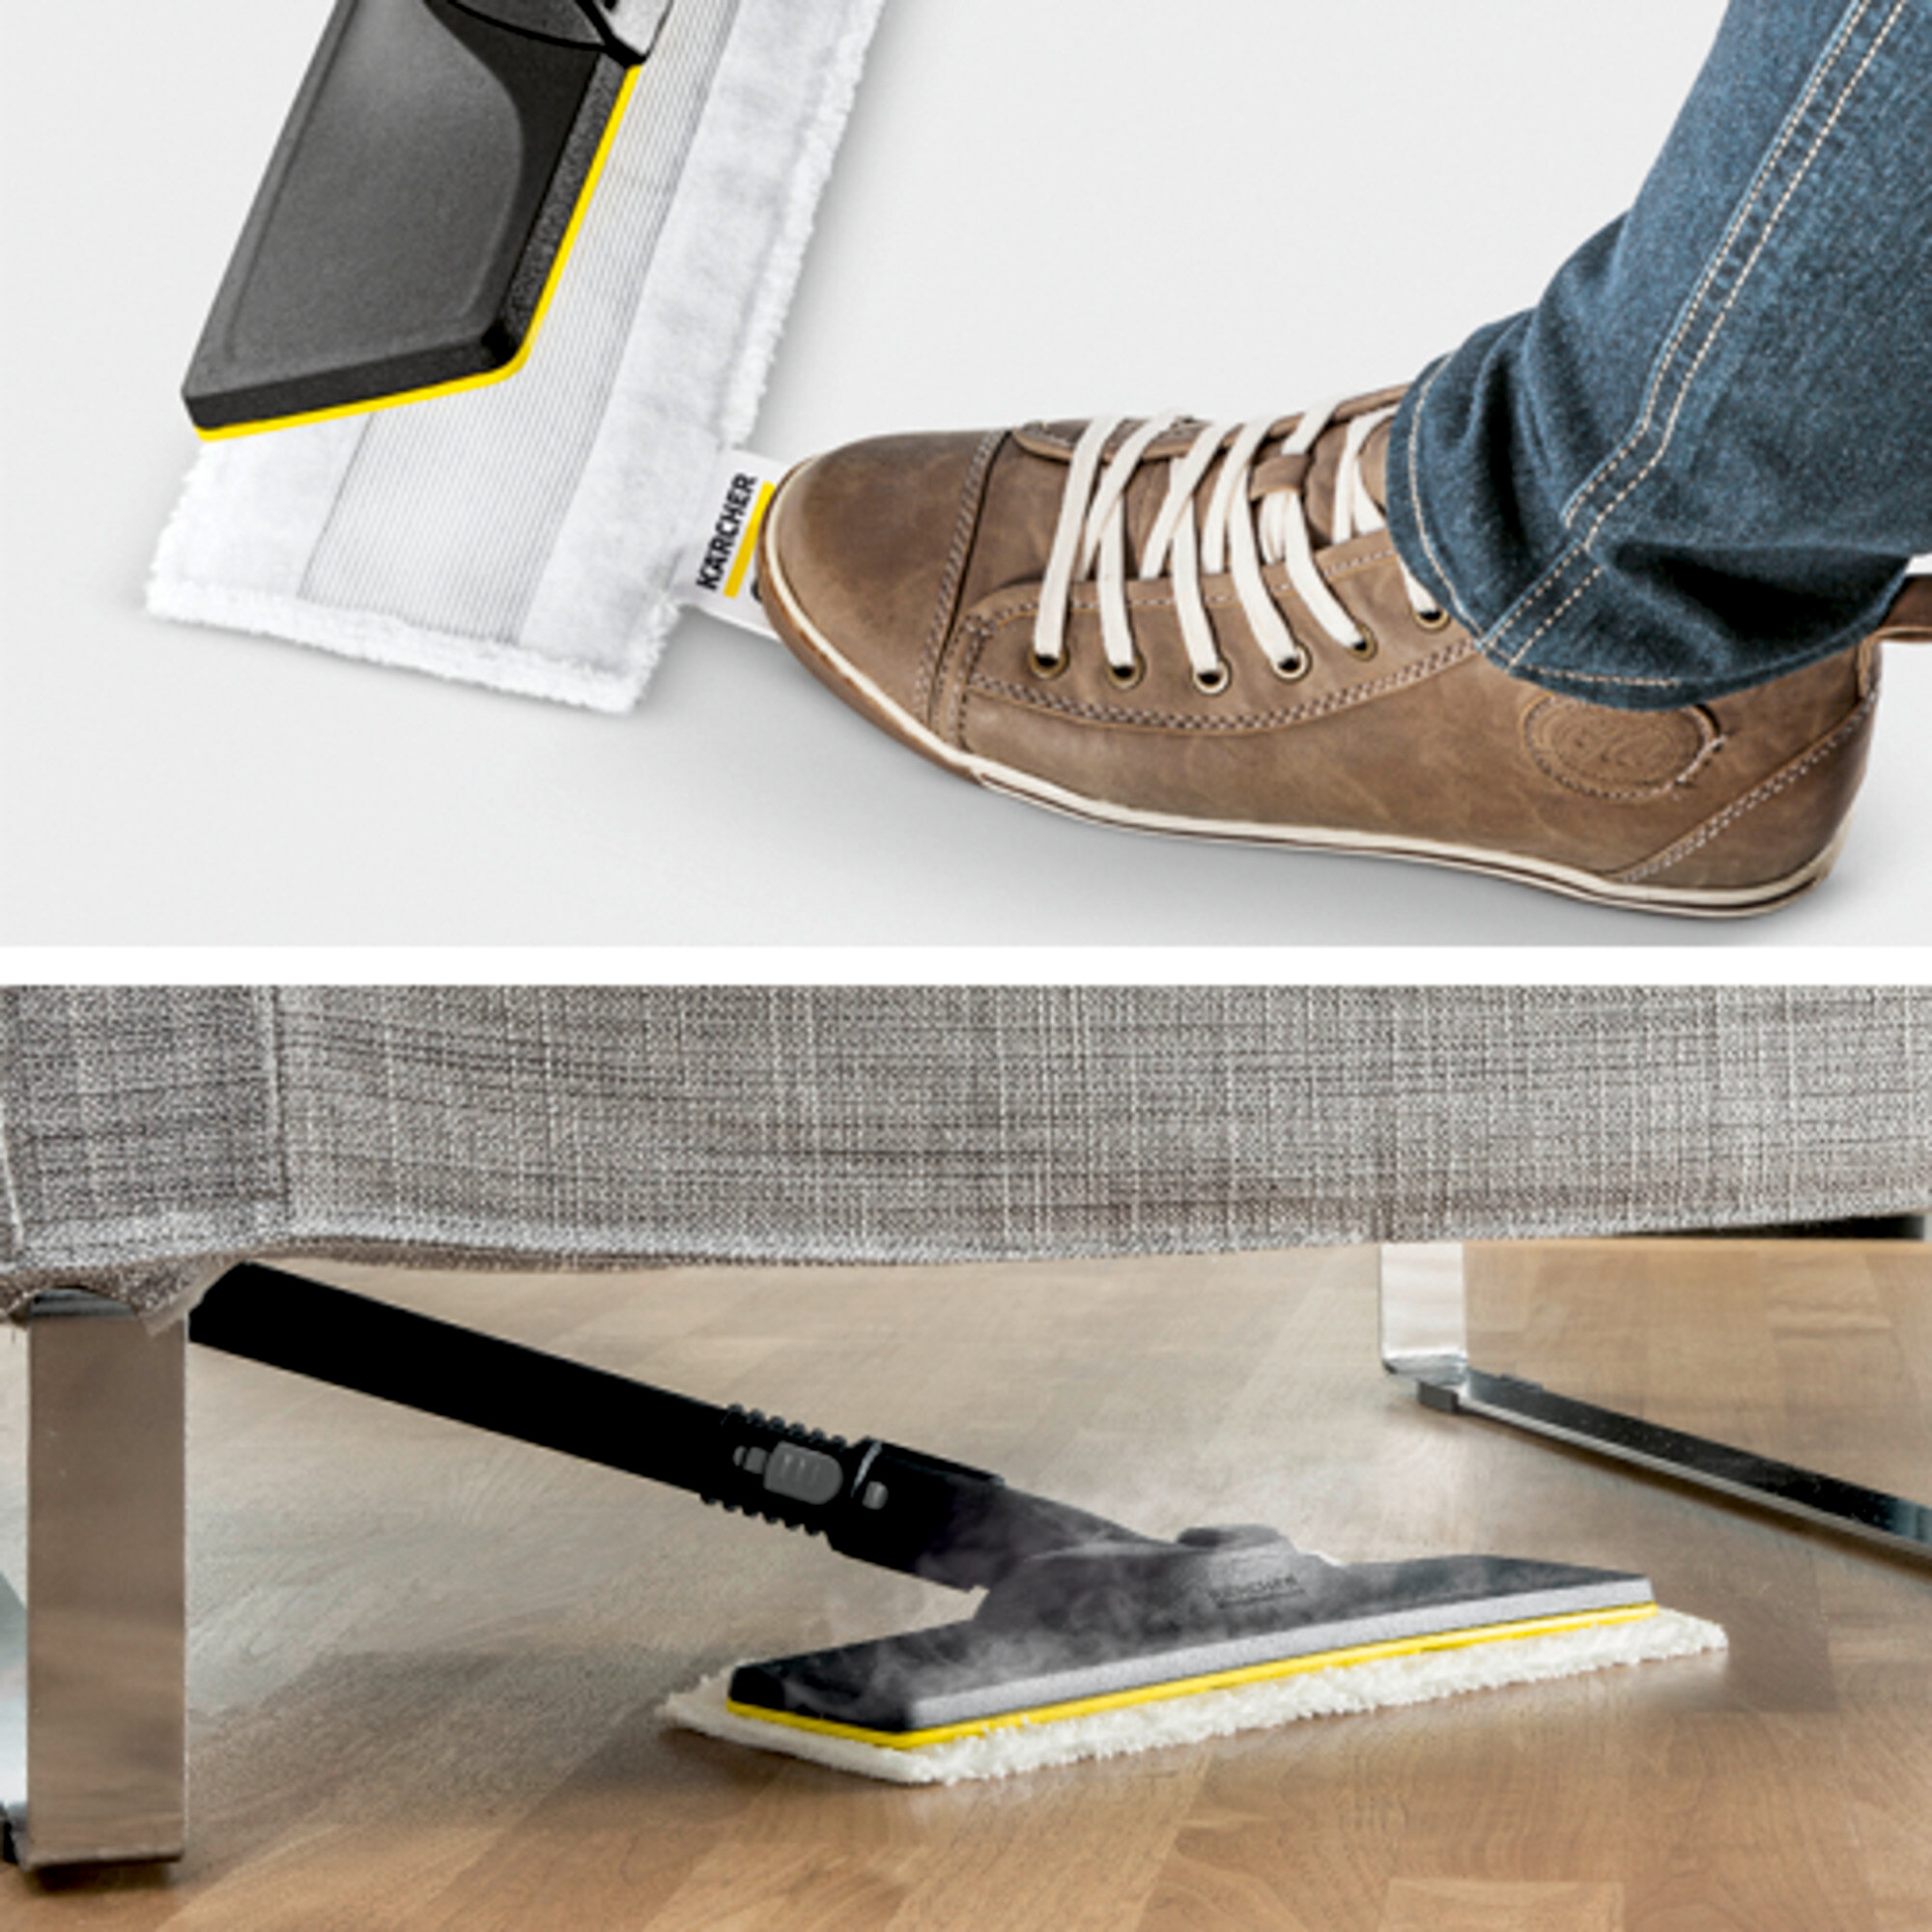 Garo valytuvai SC 2 EasyFix Premium: Grindų valymo rinkinys EasyFix su lanksčia jungtimi ant grindų antgalio ir lipnia fiksacijos sistema grindų šluostei.